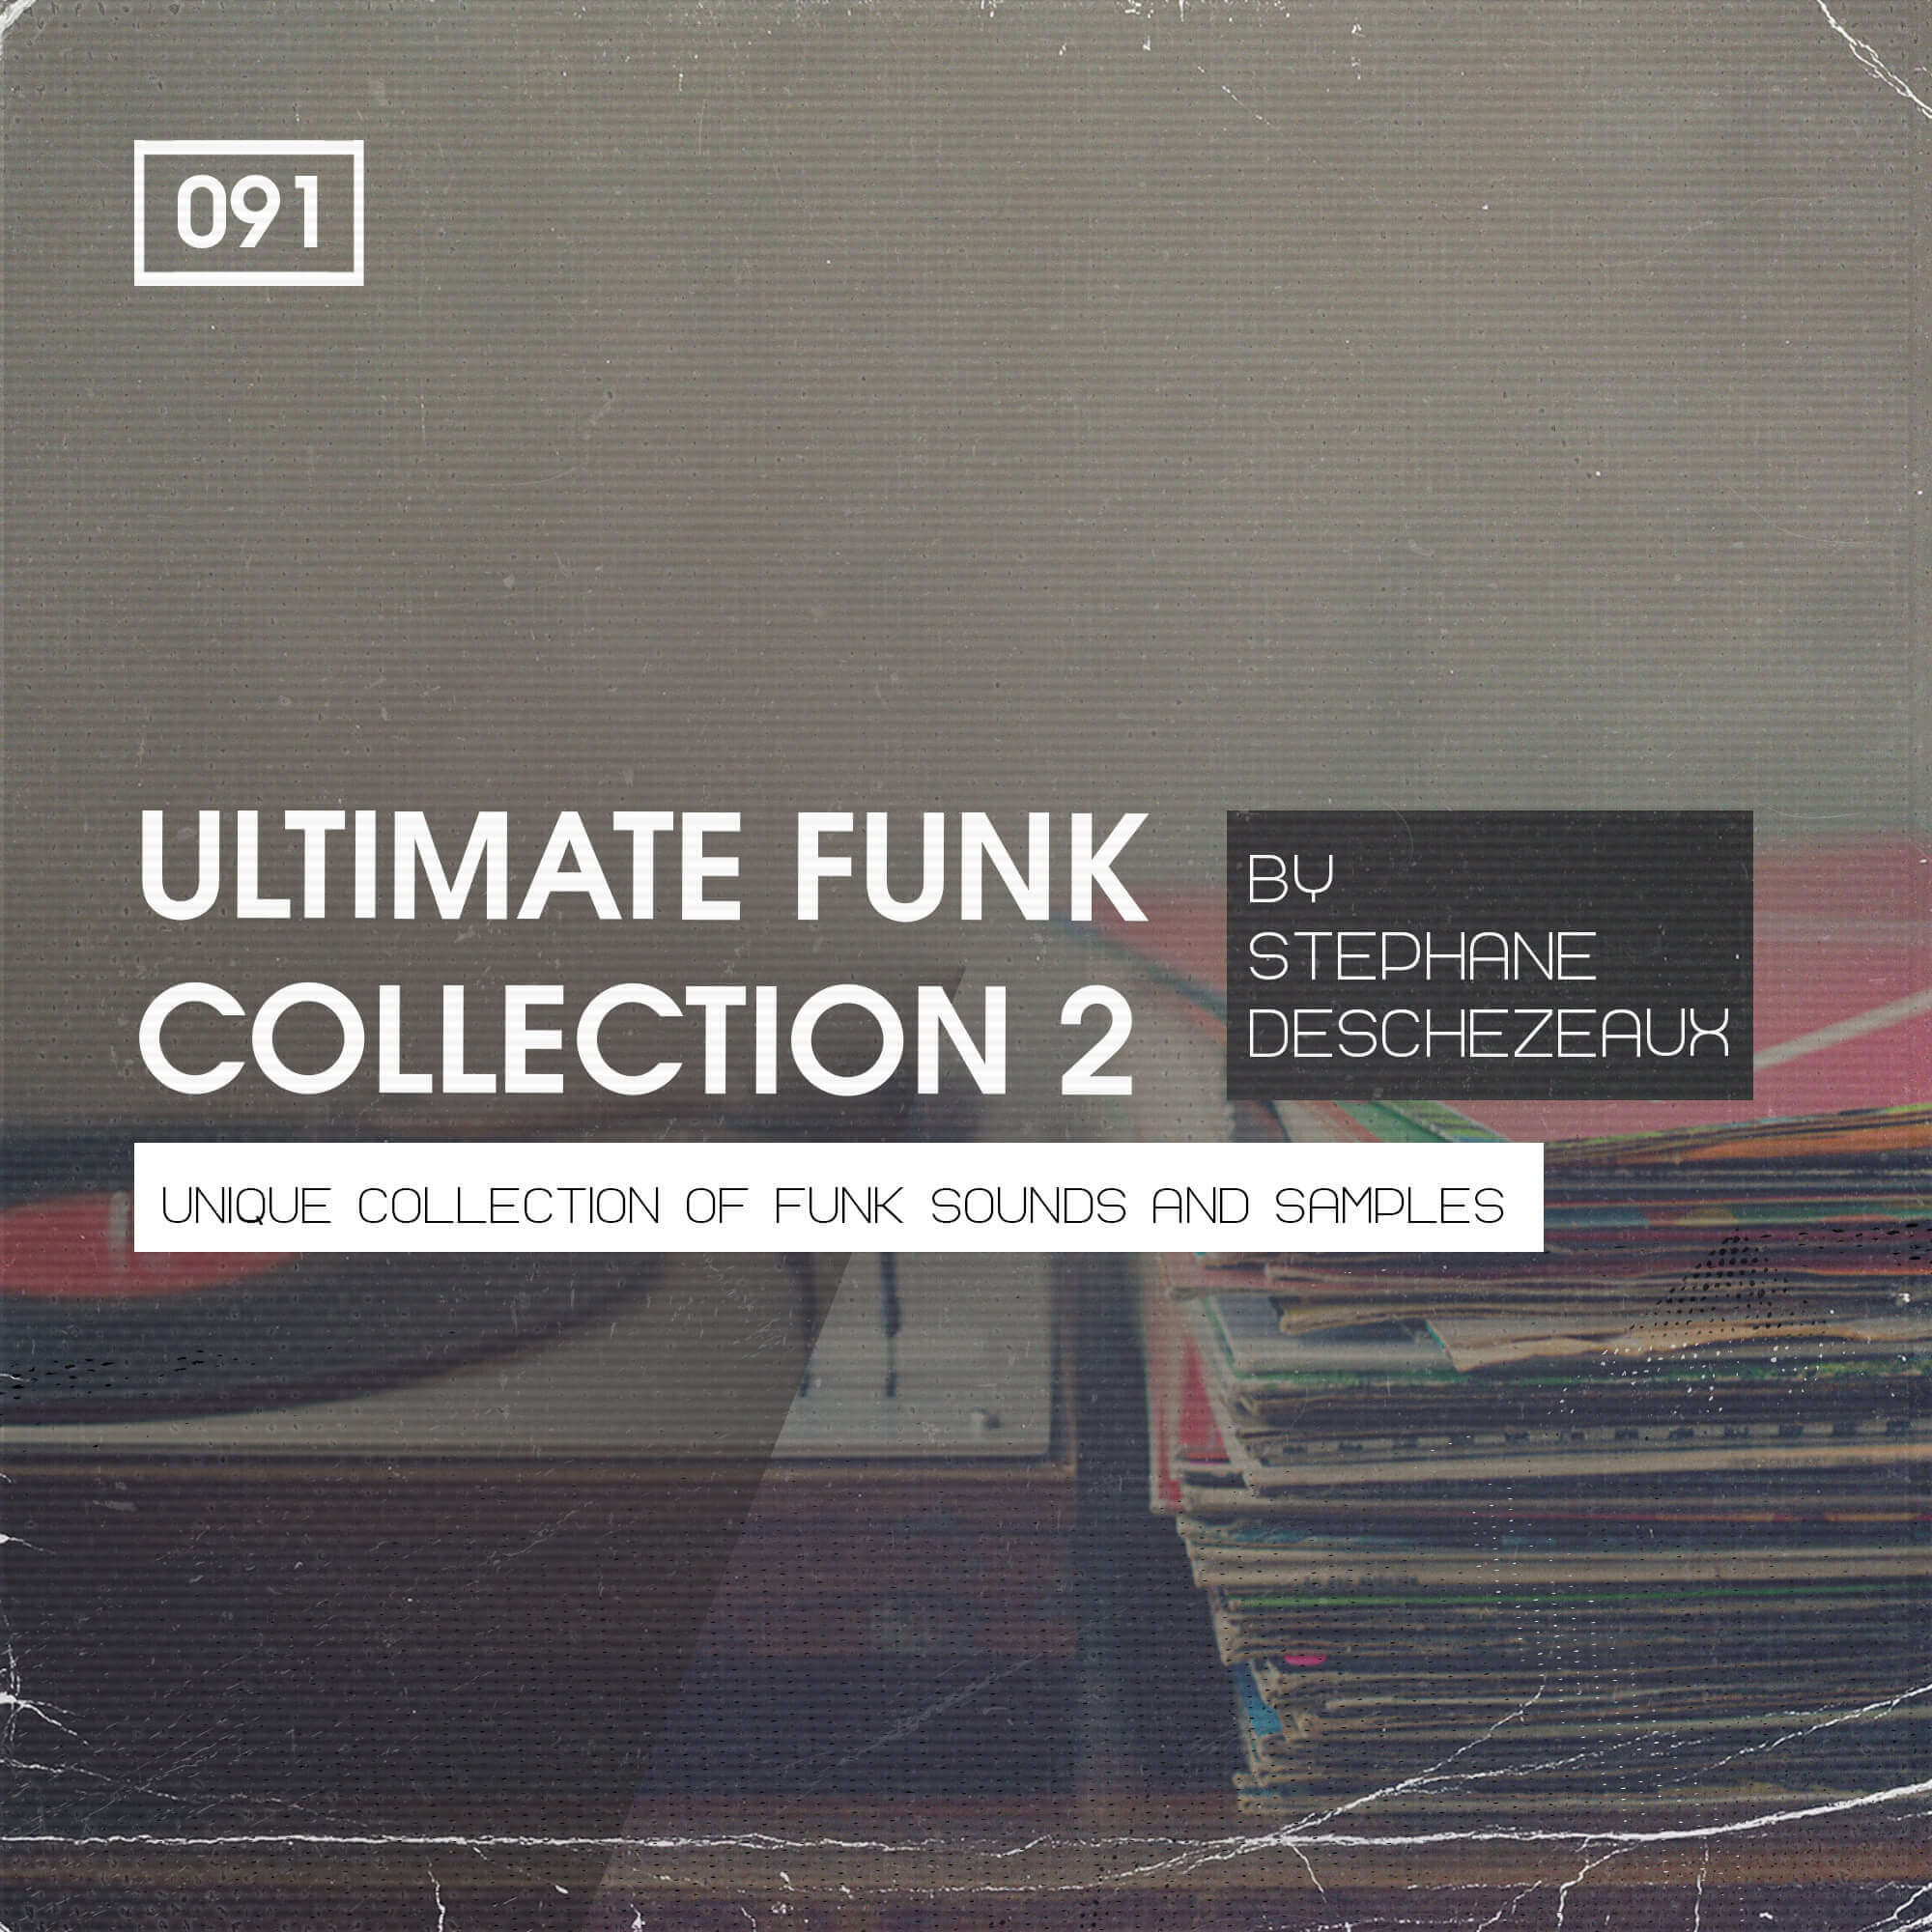 Stephane Deschezeaux Presents Ultimate Funk Collecton 2